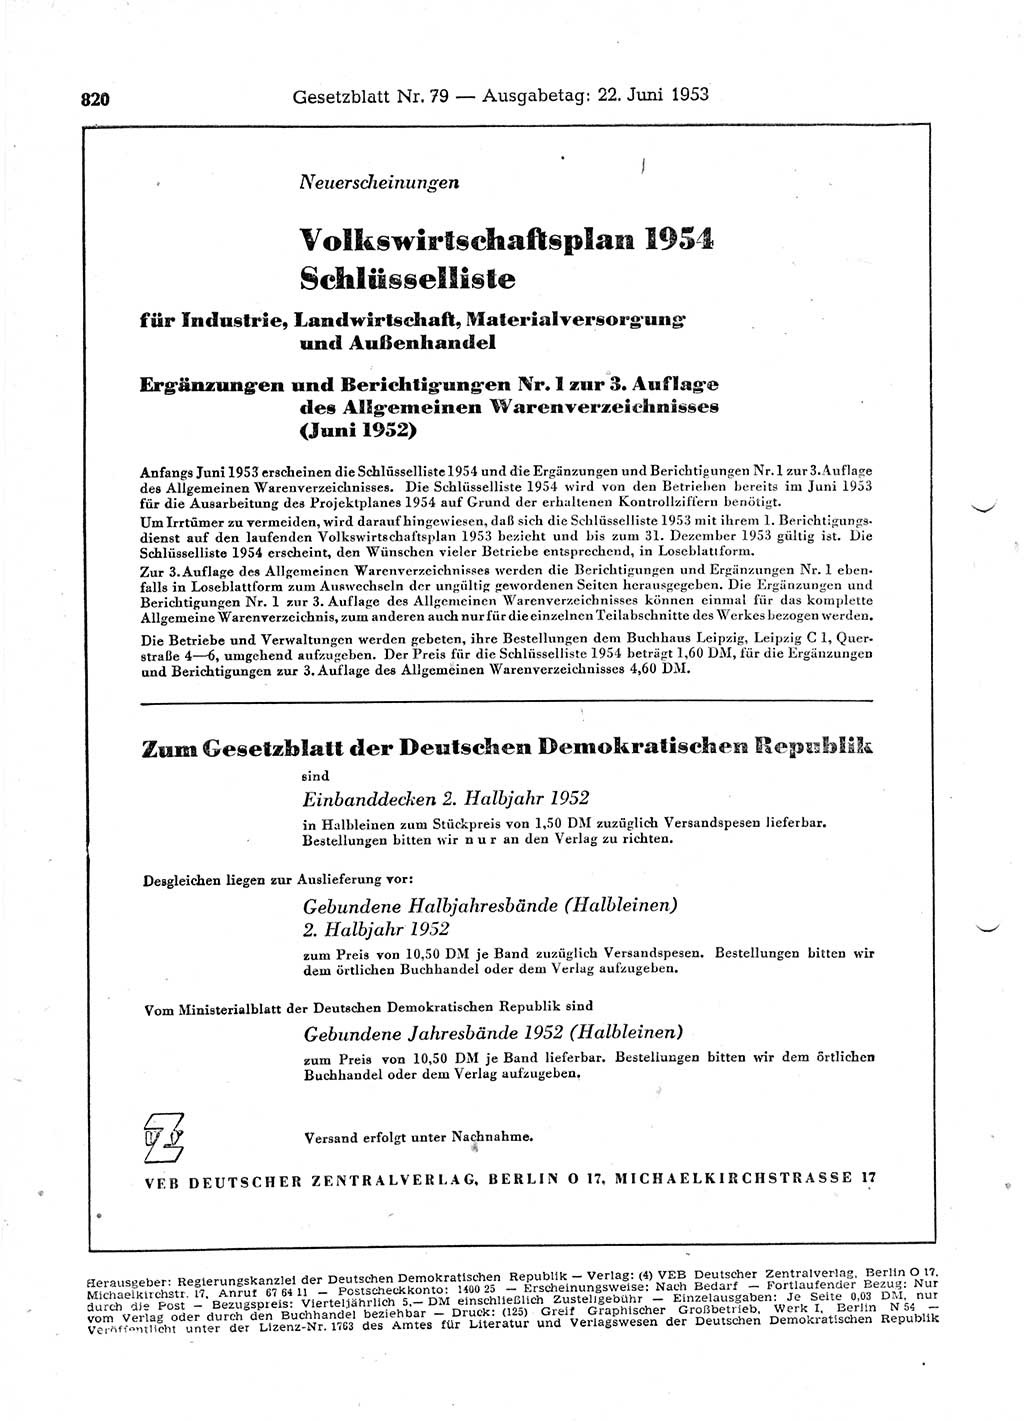 Gesetzblatt (GBl.) der Deutschen Demokratischen Republik (DDR) 1953, Seite 820 (GBl. DDR 1953, S. 820)